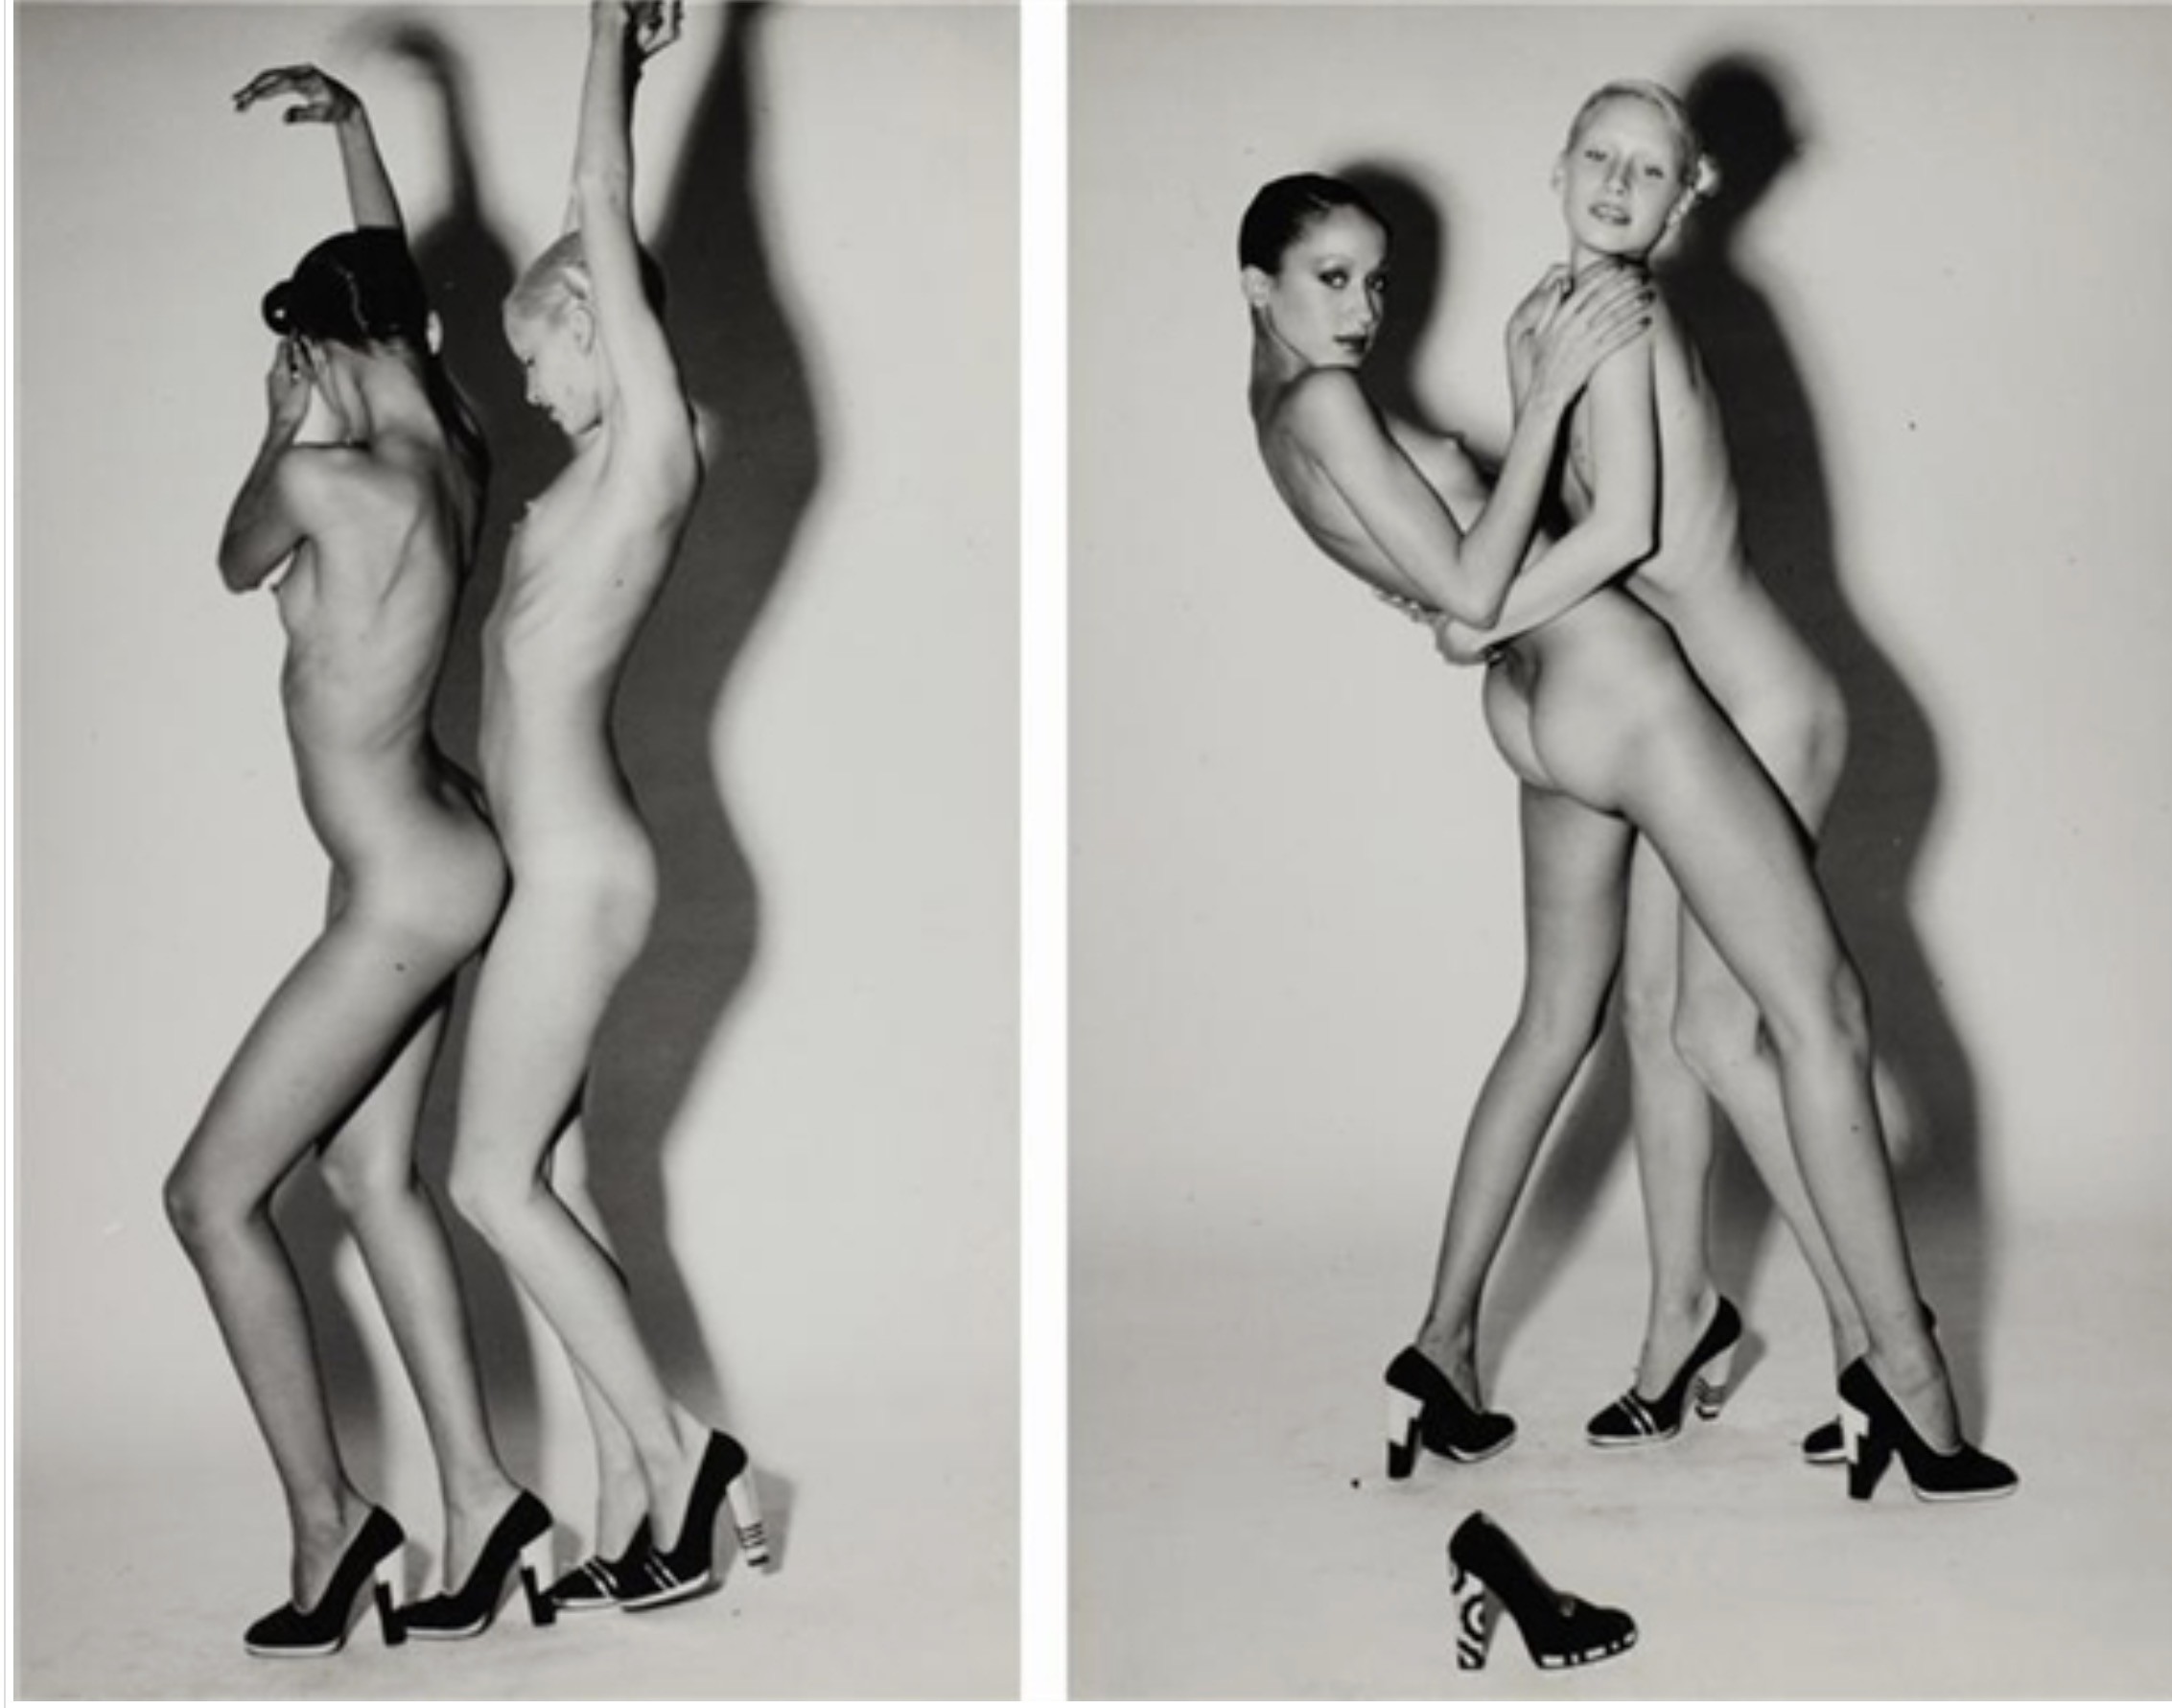 Guy Bourdin, Nudes Wearing Charles Jourdan Shoes, c.1965-197